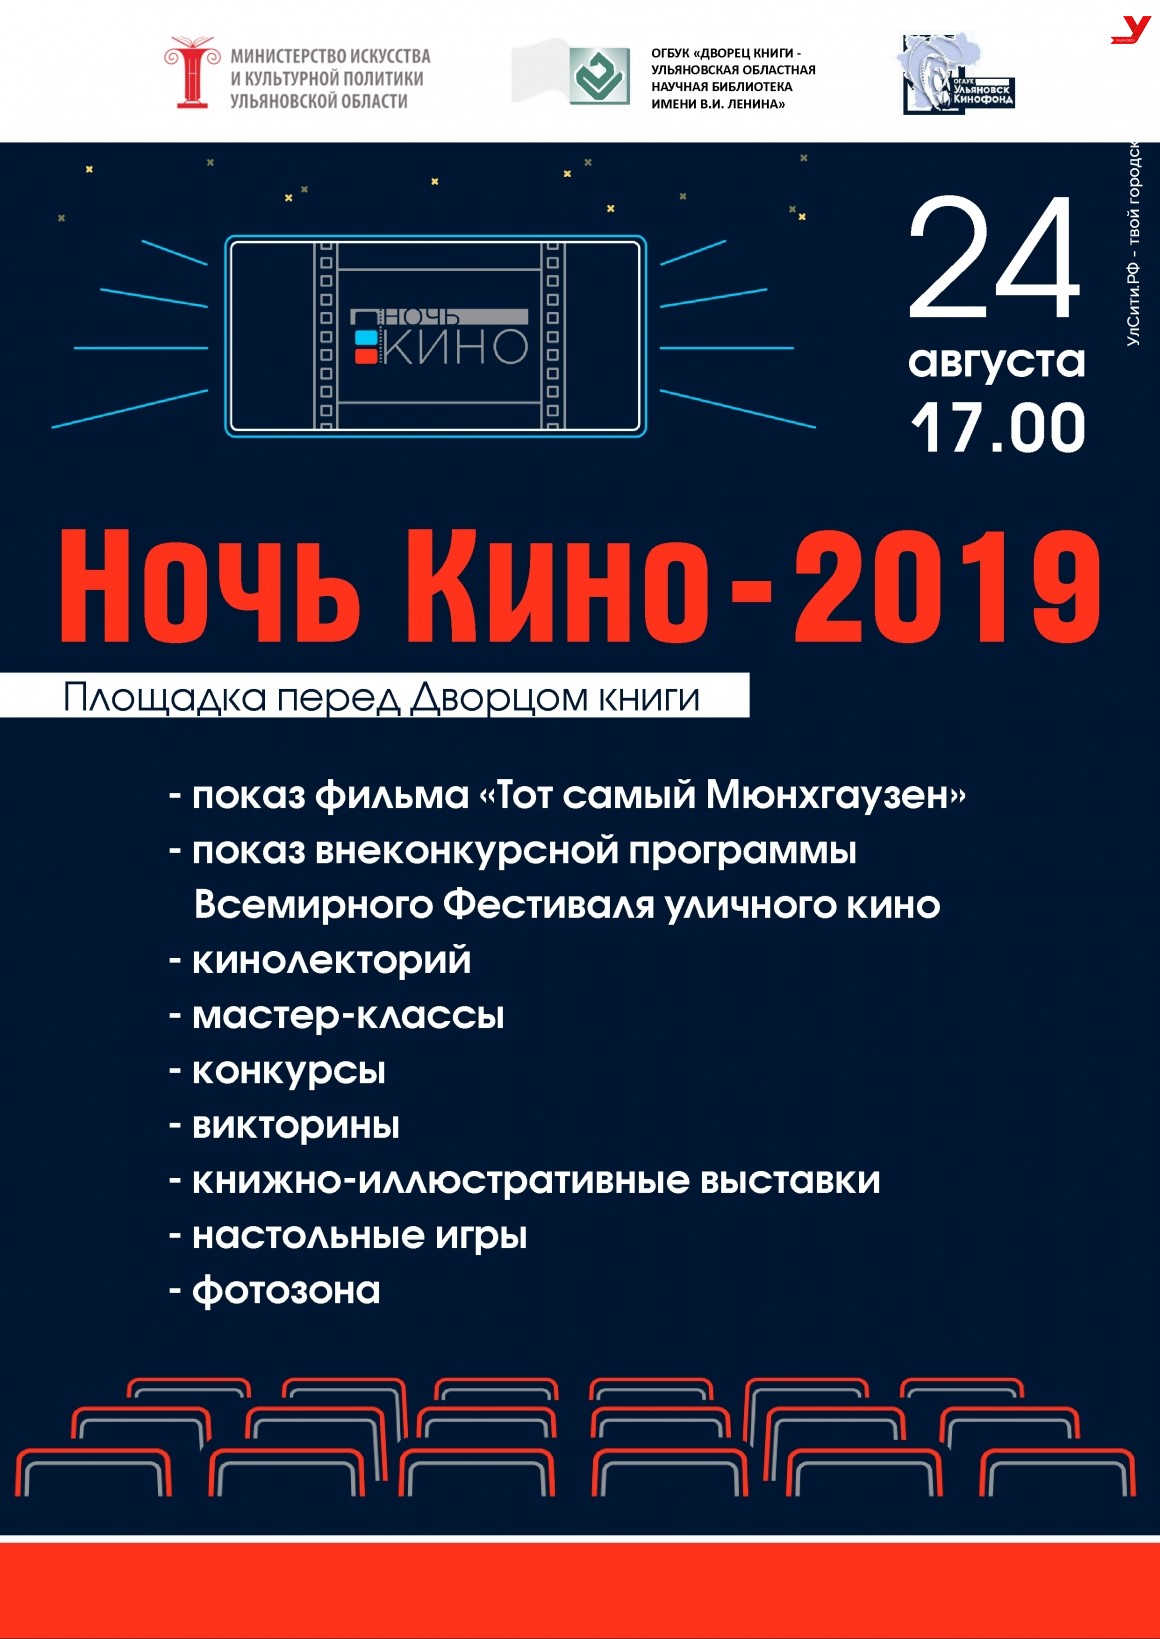 Дворец книги примет участие в акции «Ночь кино-2019»